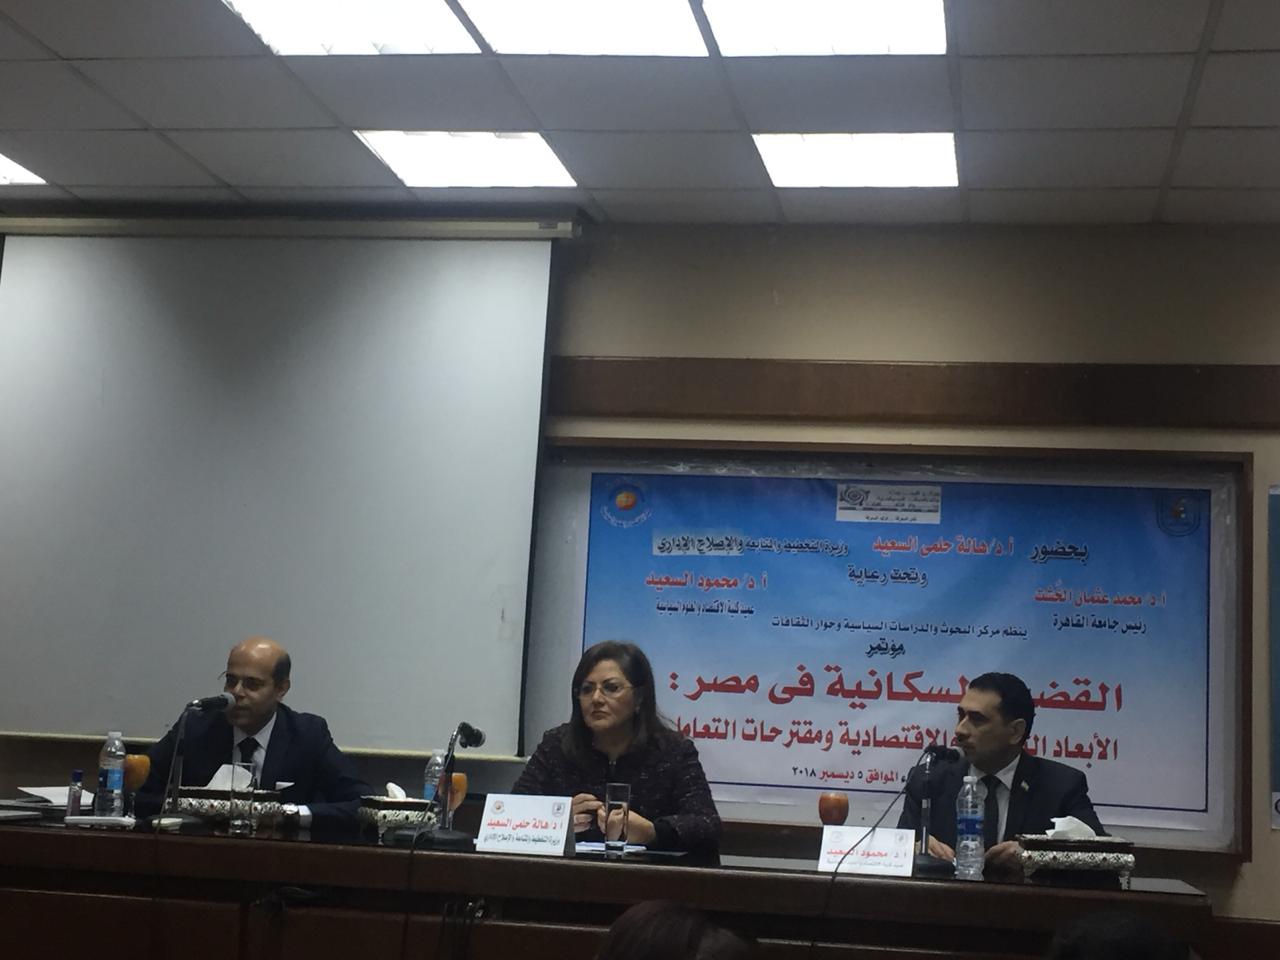 مؤتمر القضية السكانية فى مصر الأبعاد الثقافية والاقتصادية والاستراتيجية ومقترحات التعامل،  (6)